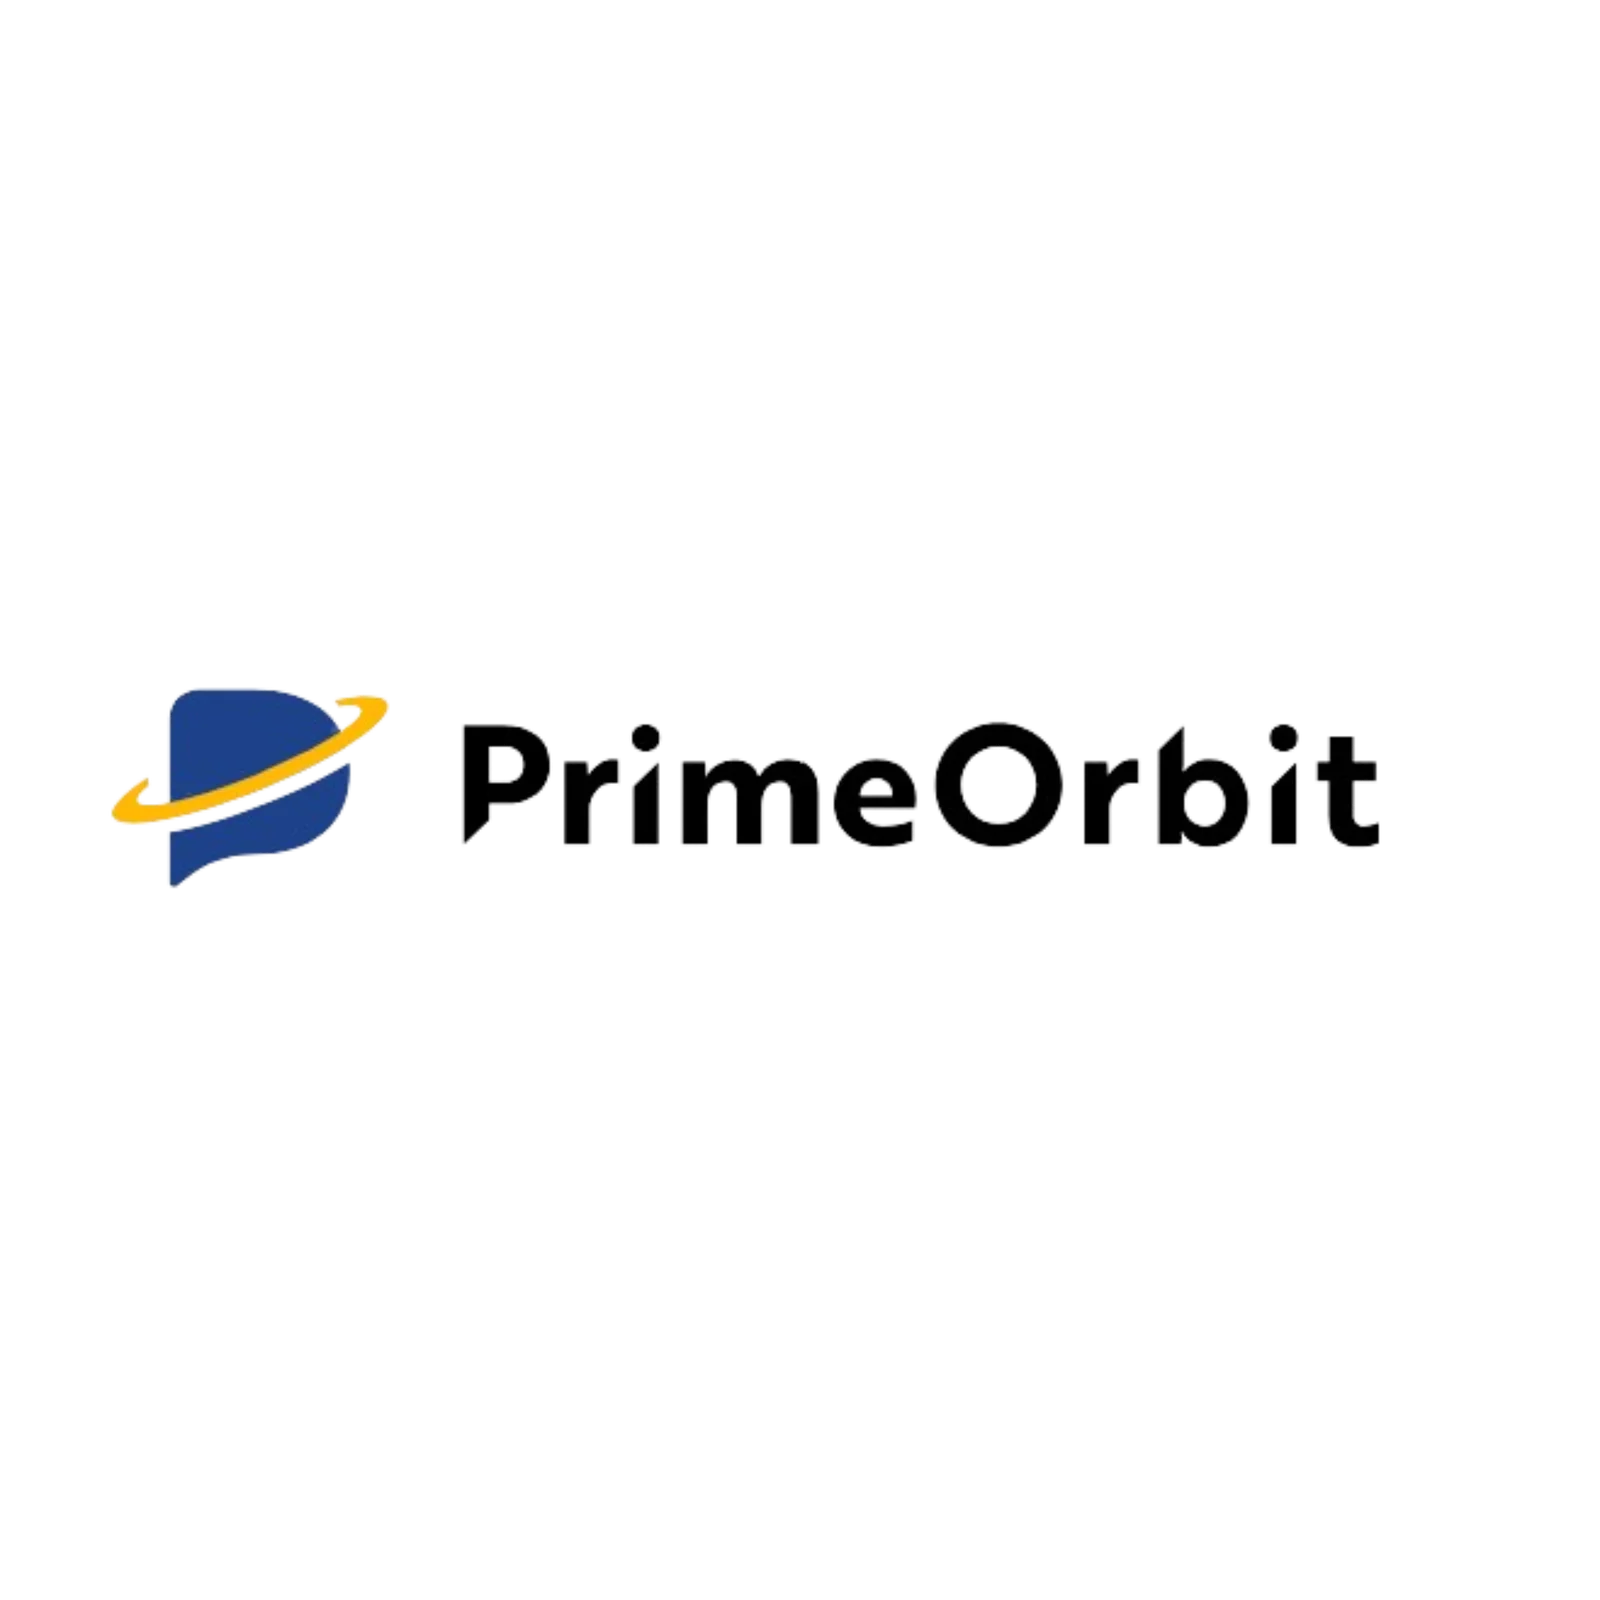 Prime-Orbit-2